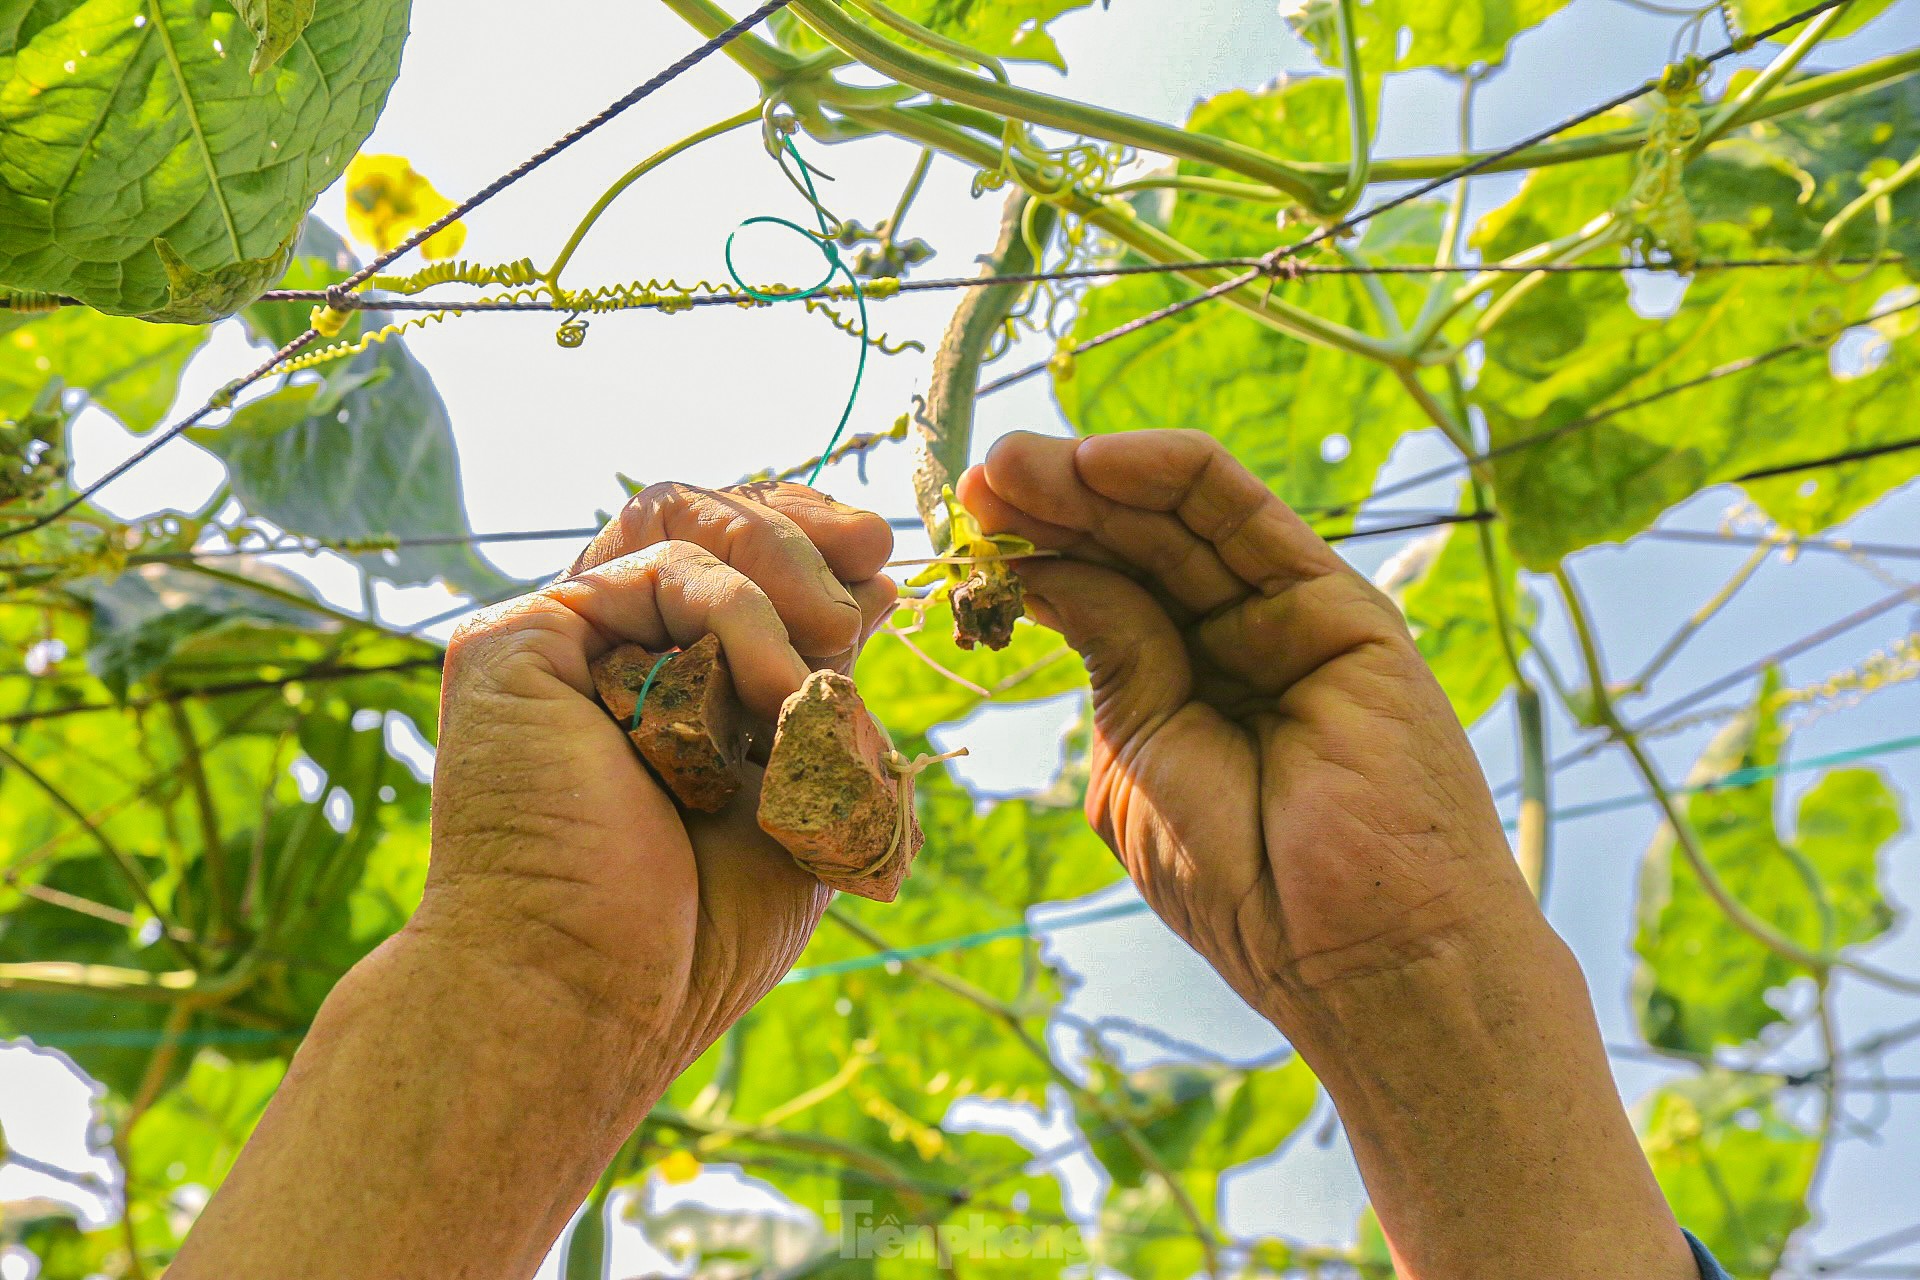 Nông dân ở làng rau này ở Đà Nẵng dùng "độc chiêu" giúp những vườn mướp của mình cho trái to, dài, thẳng tắp- Ảnh 6.